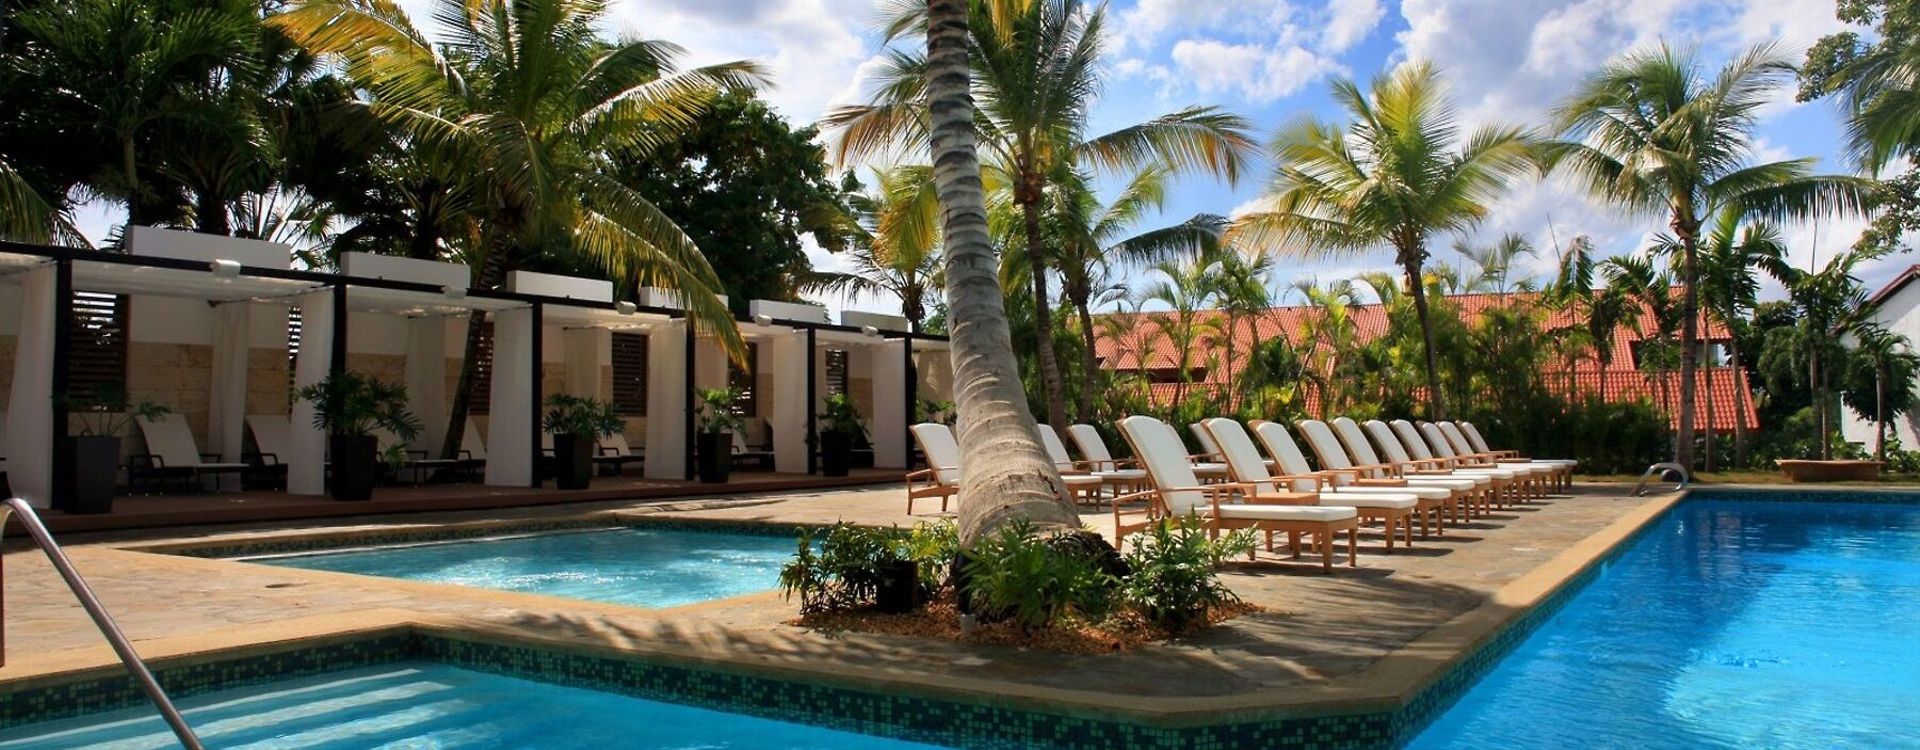 Casa de Campo Resort & Villas-Pool (2).jpg